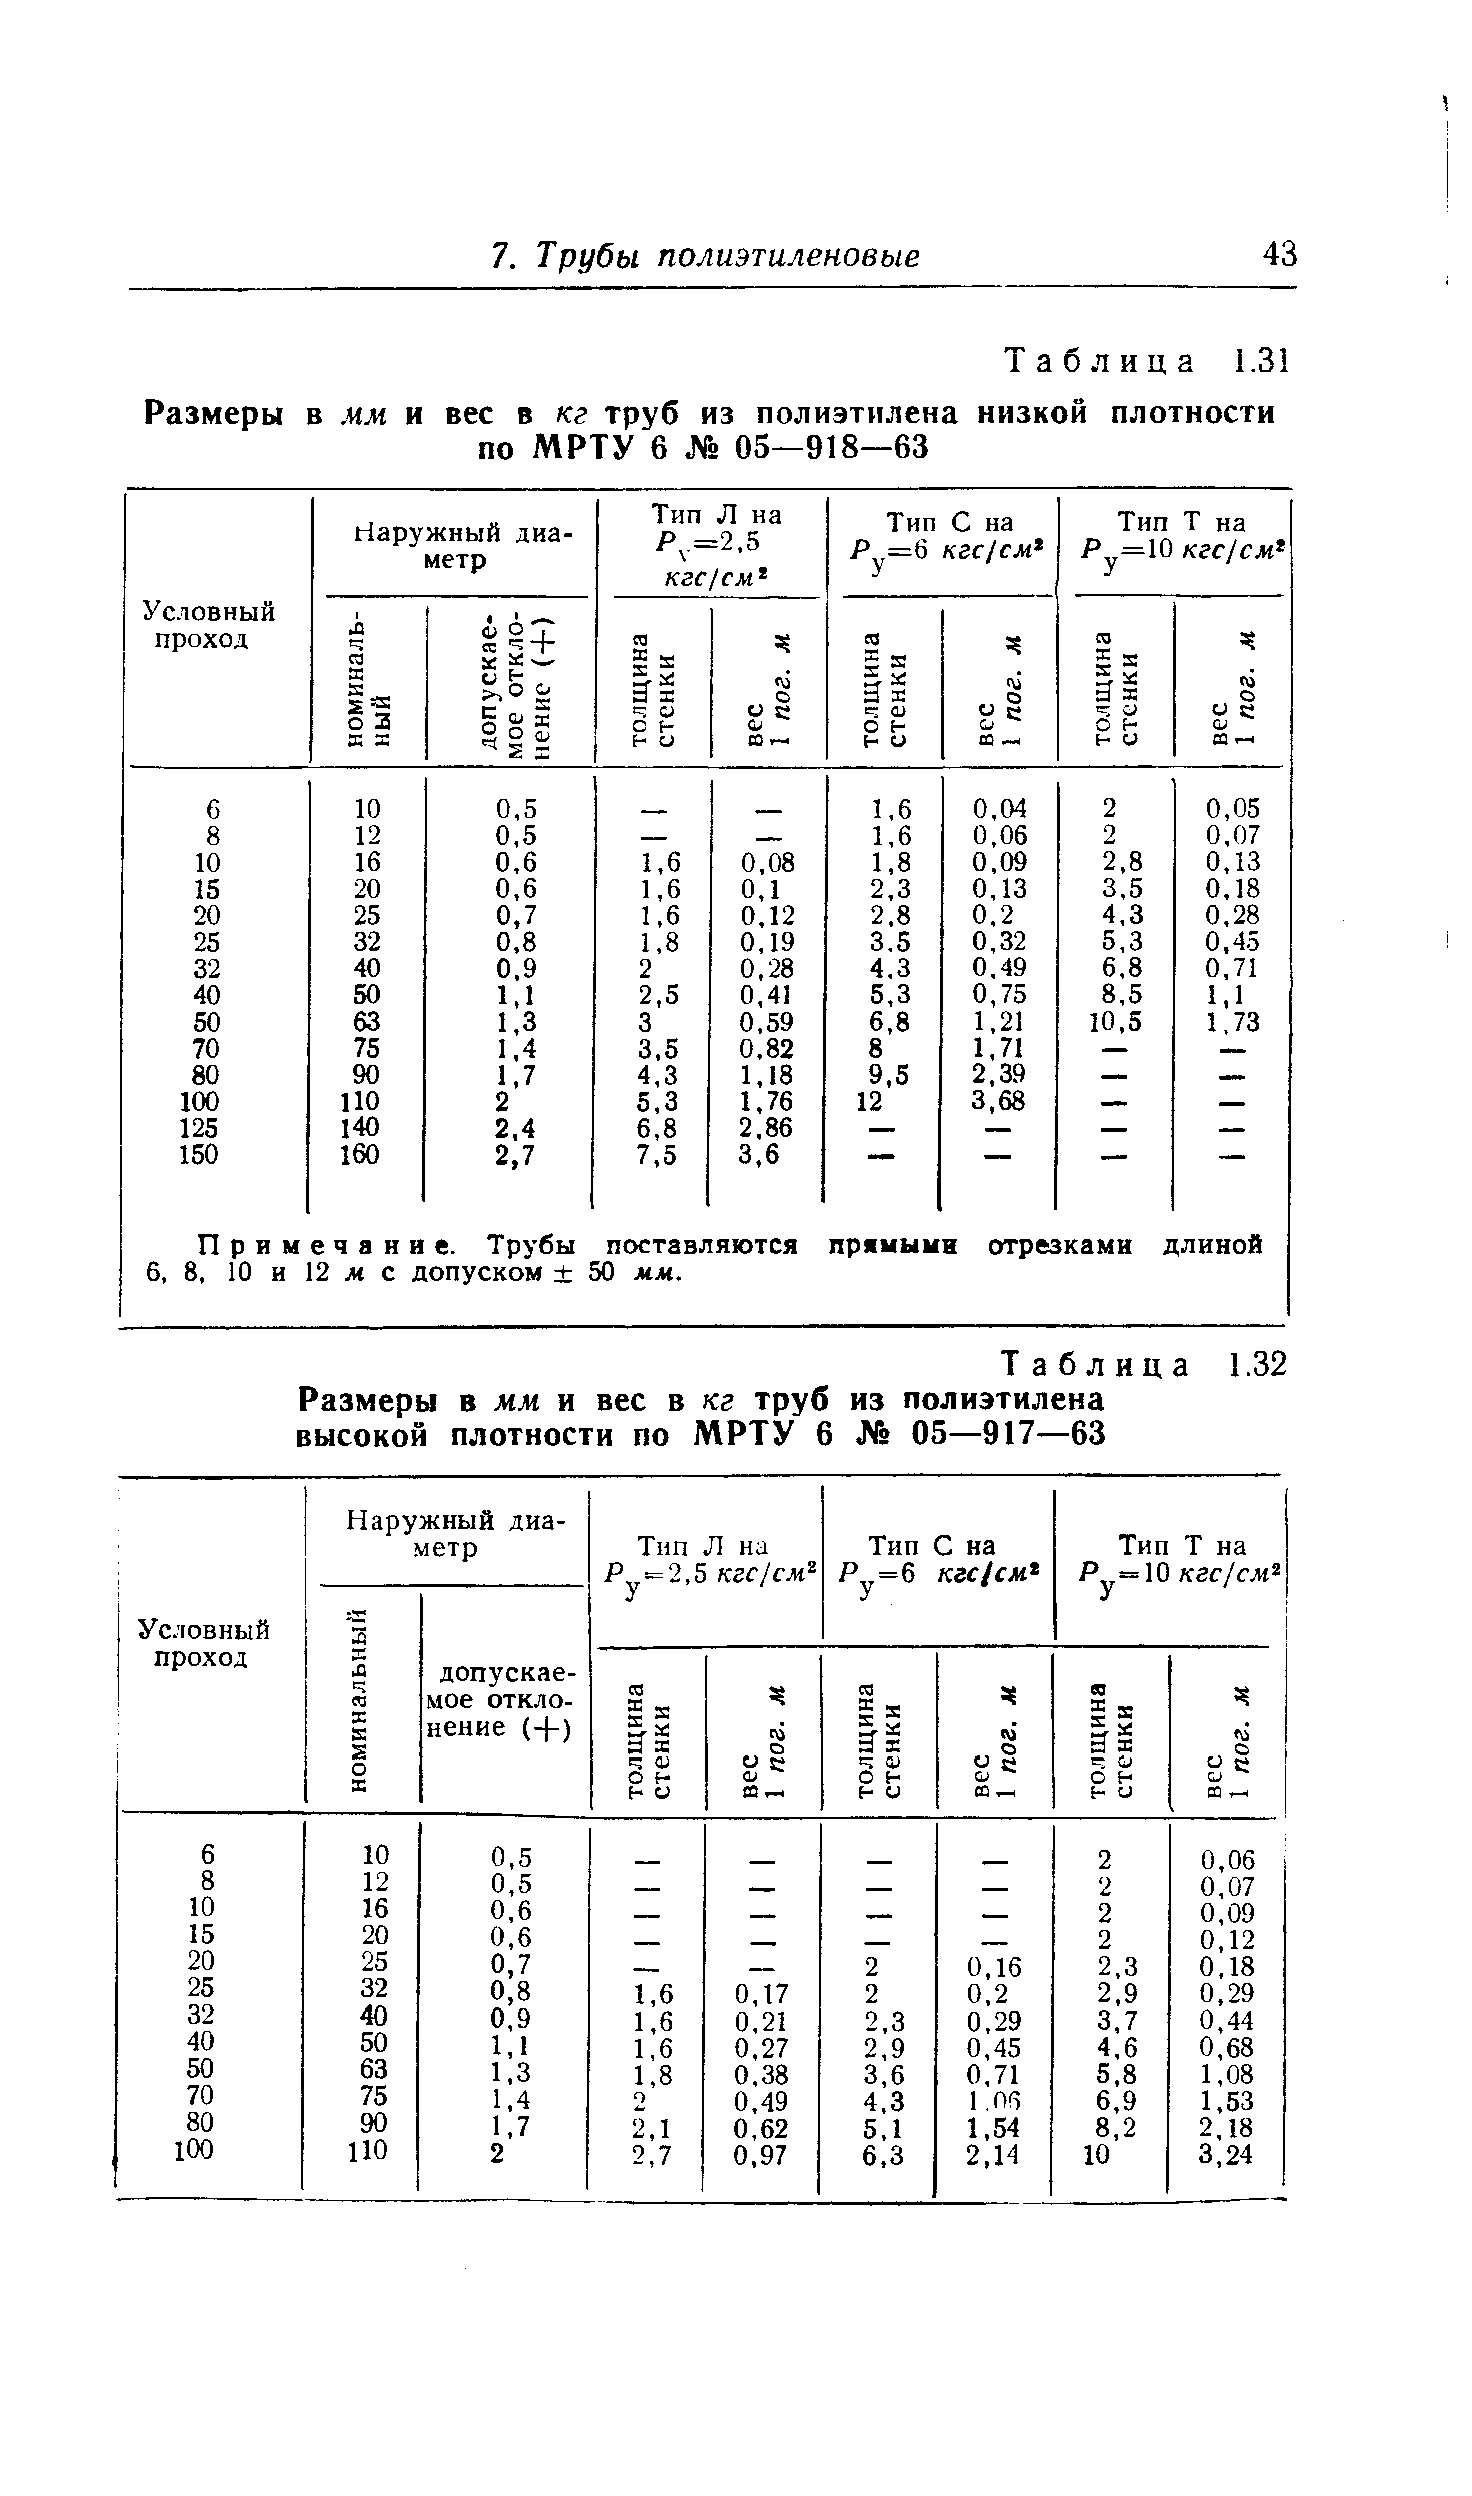 Таблица 1.32 Размеры в мм и вес в кг труб из полиэтилена высокой плотности по МРТУ 6 № 05—917—63
